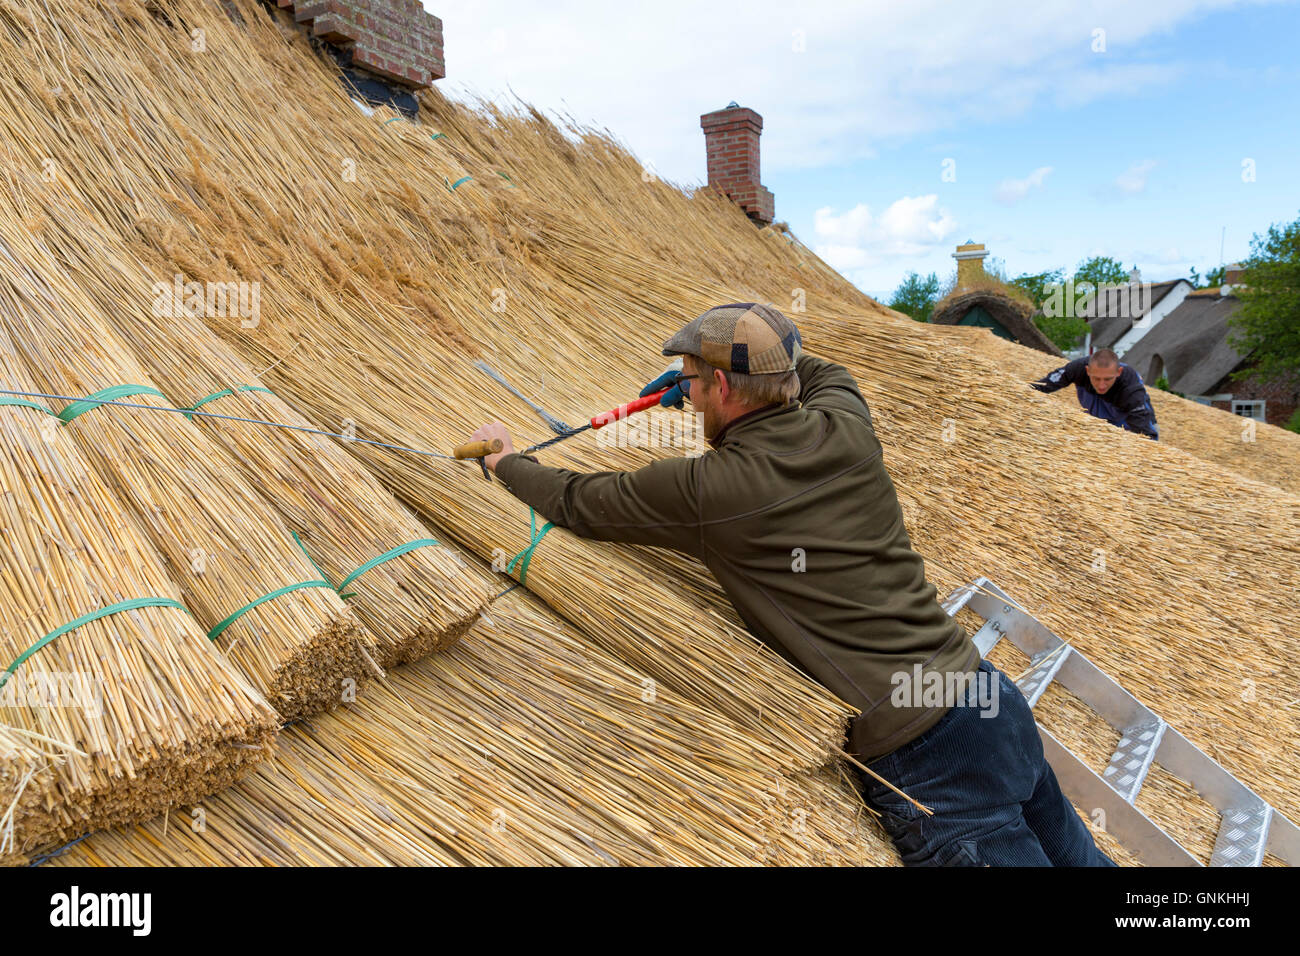 Nouveau toit de chaume Thatchers méthode traditionnelle avec meules de roseaux/se précipite sur la chaumière à l'île de Fano, Danemark Banque D'Images